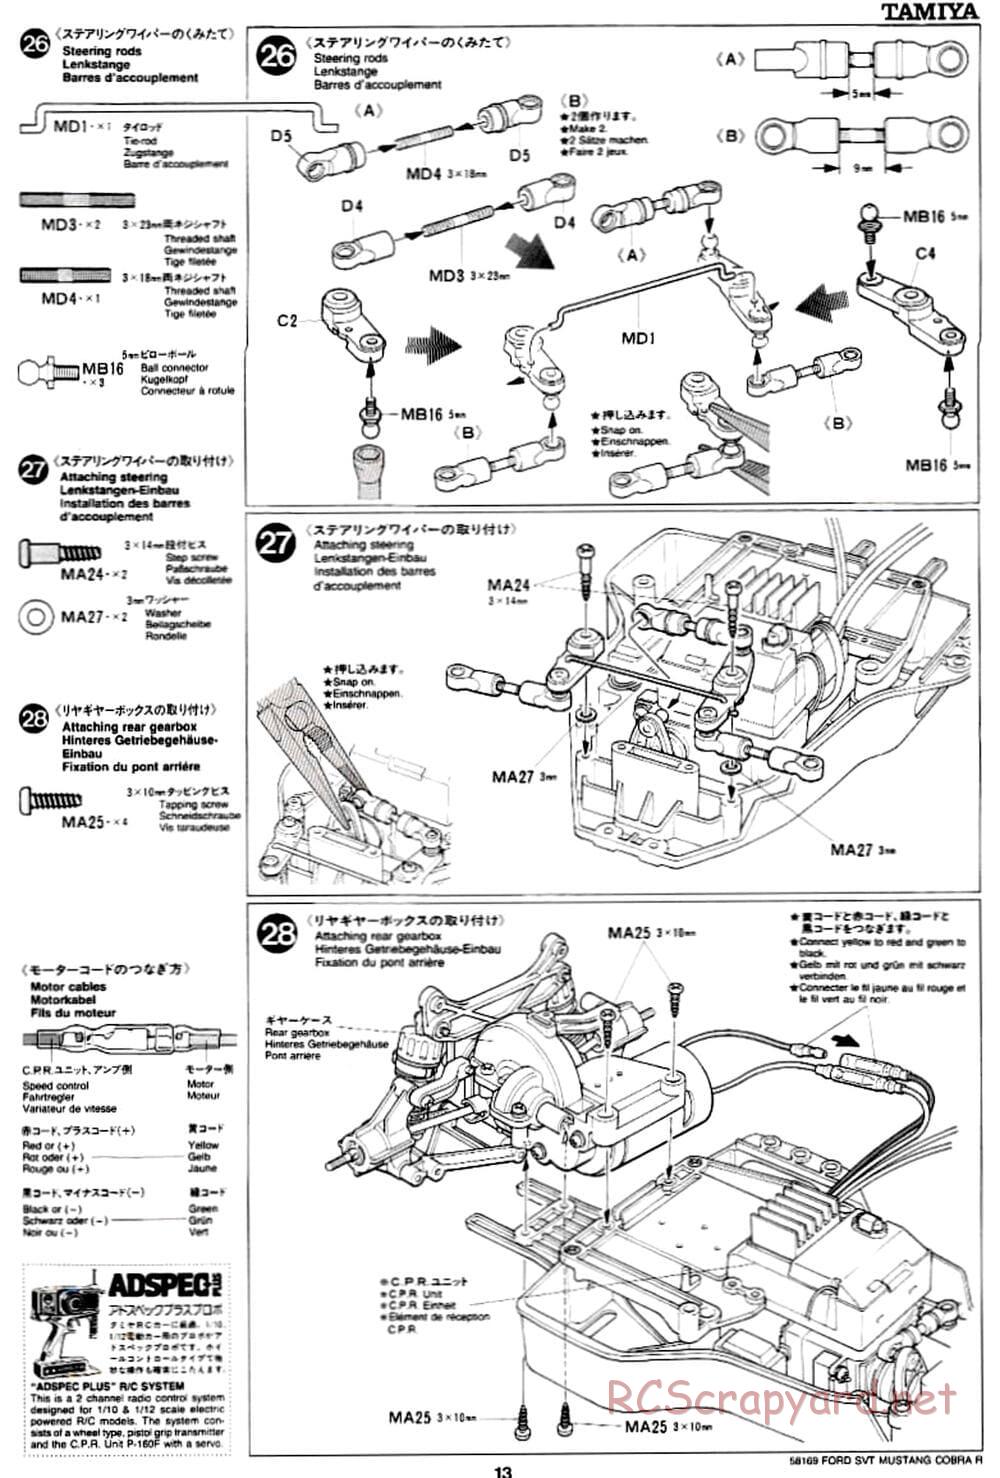 Tamiya - Ford SVT Mustang Cobra-R - TA-02 Chassis - Manual - Page 13